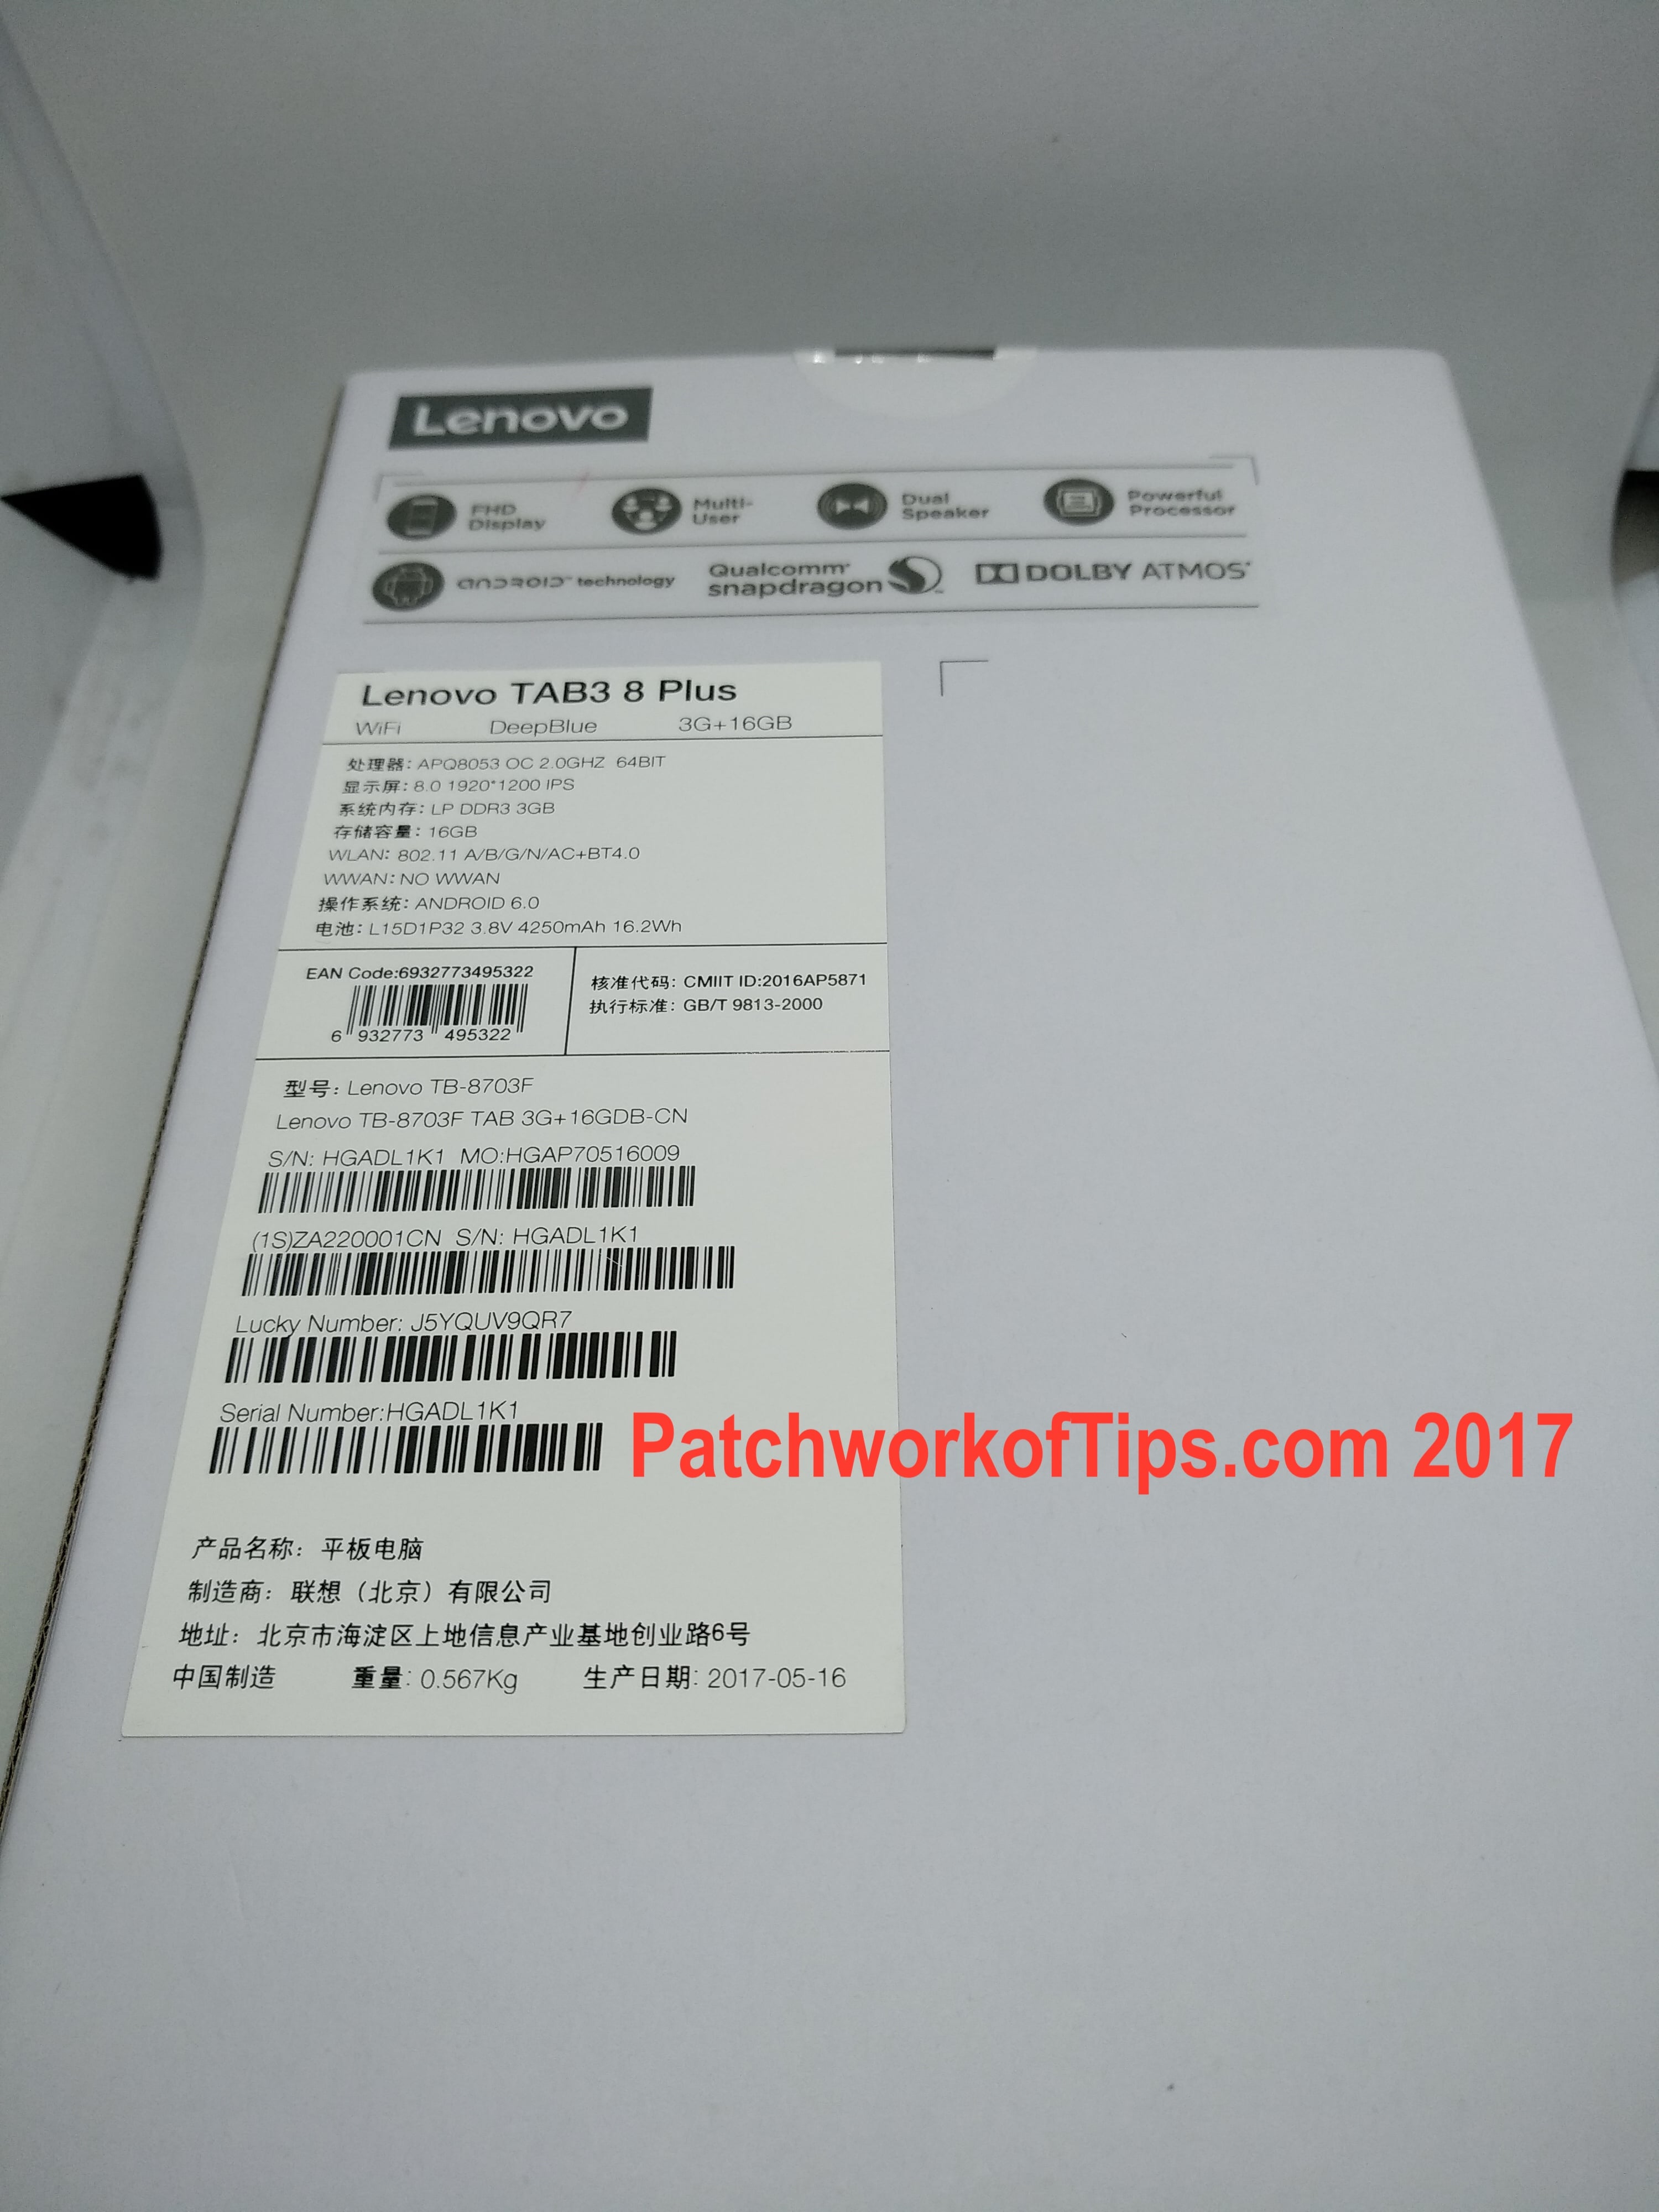 Lenovo TAB3 8 Plus Boxed 2